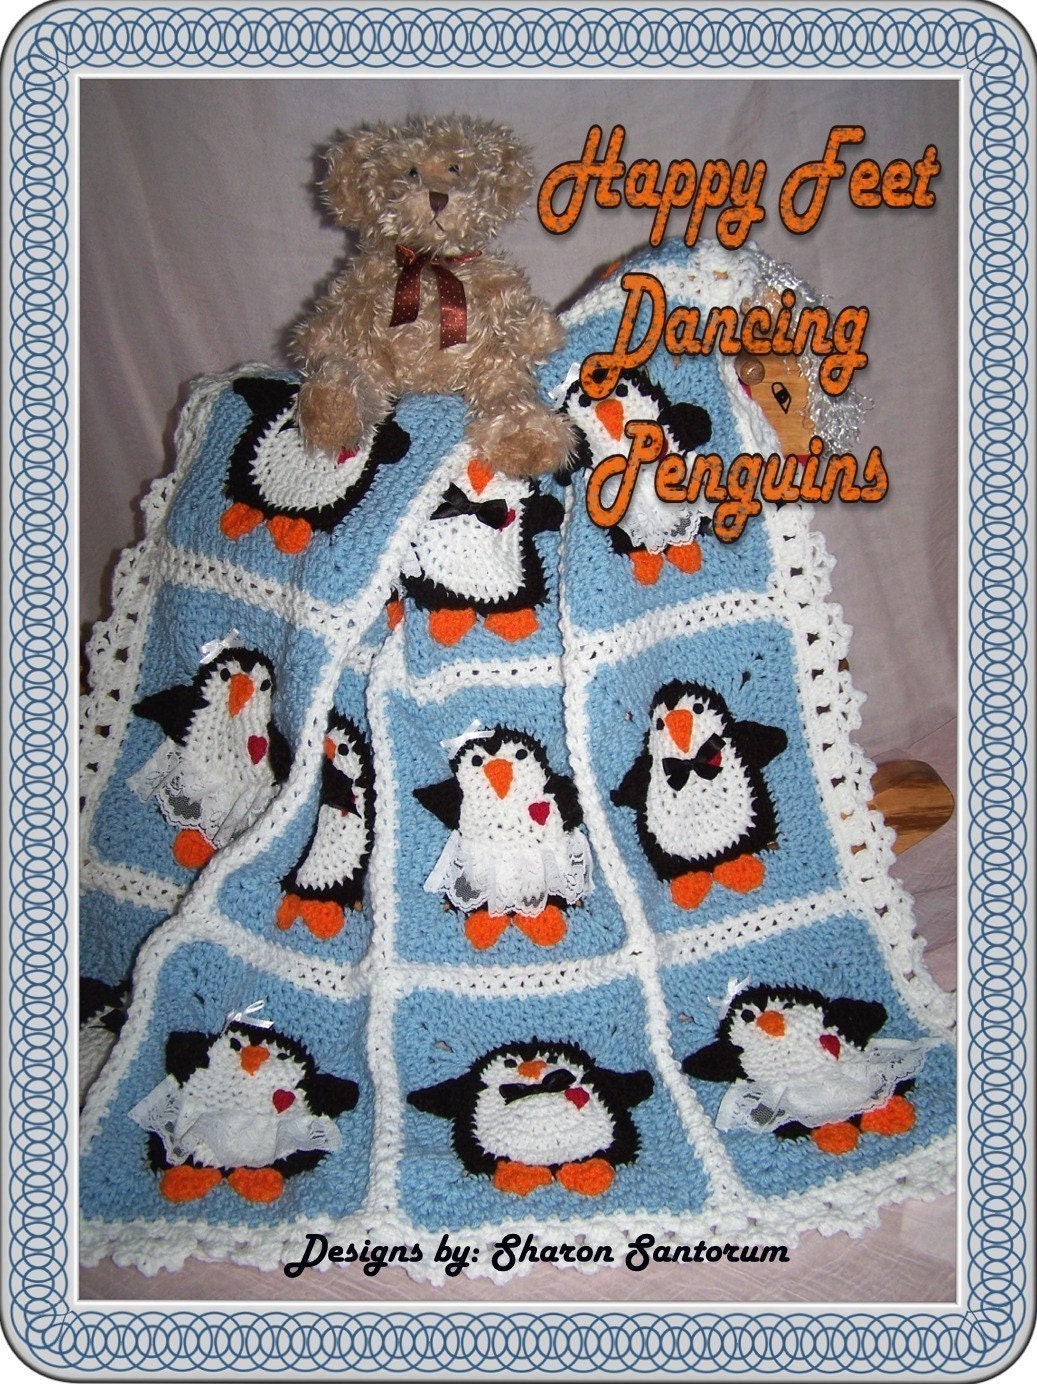 Dancing Penguins Crochet Baby Afghan or Blanket Pattern PDF